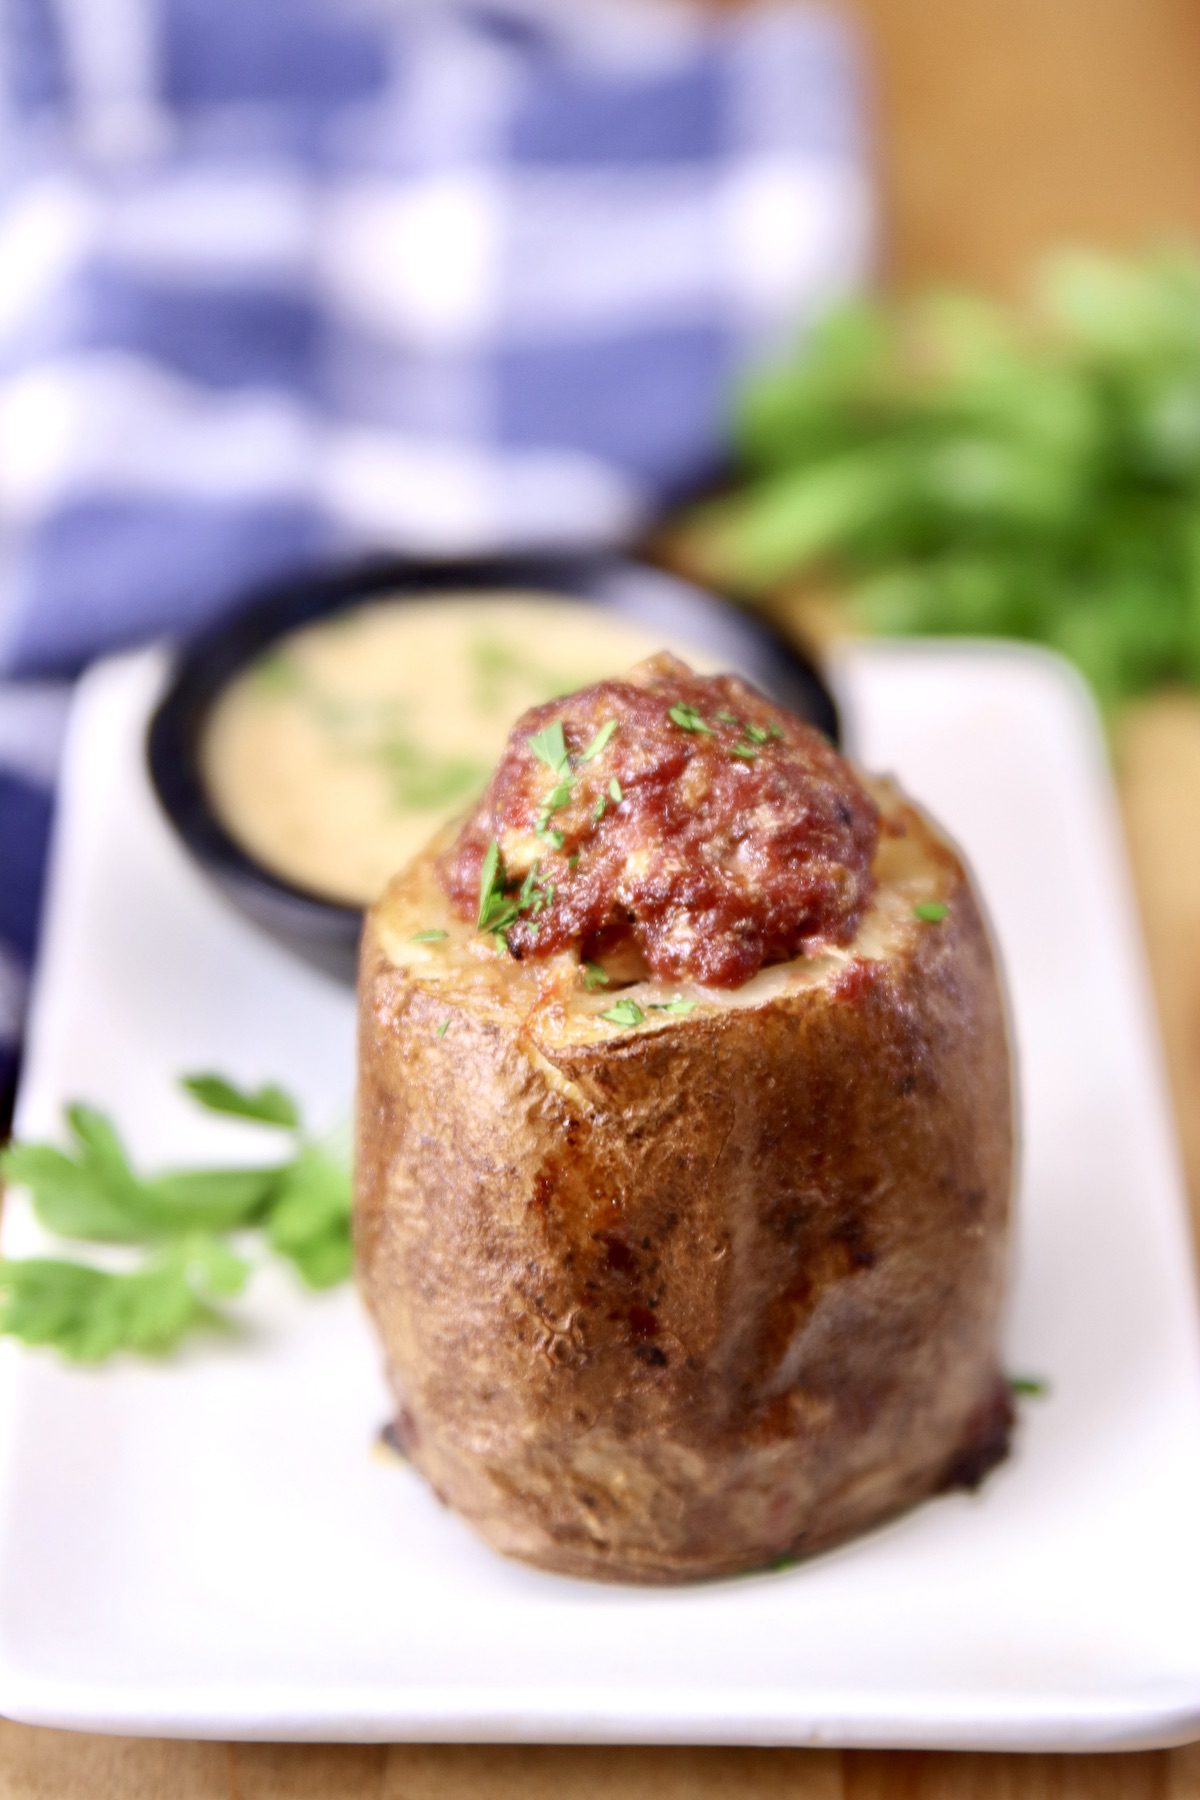 meatloaf stuffed potato on a plate